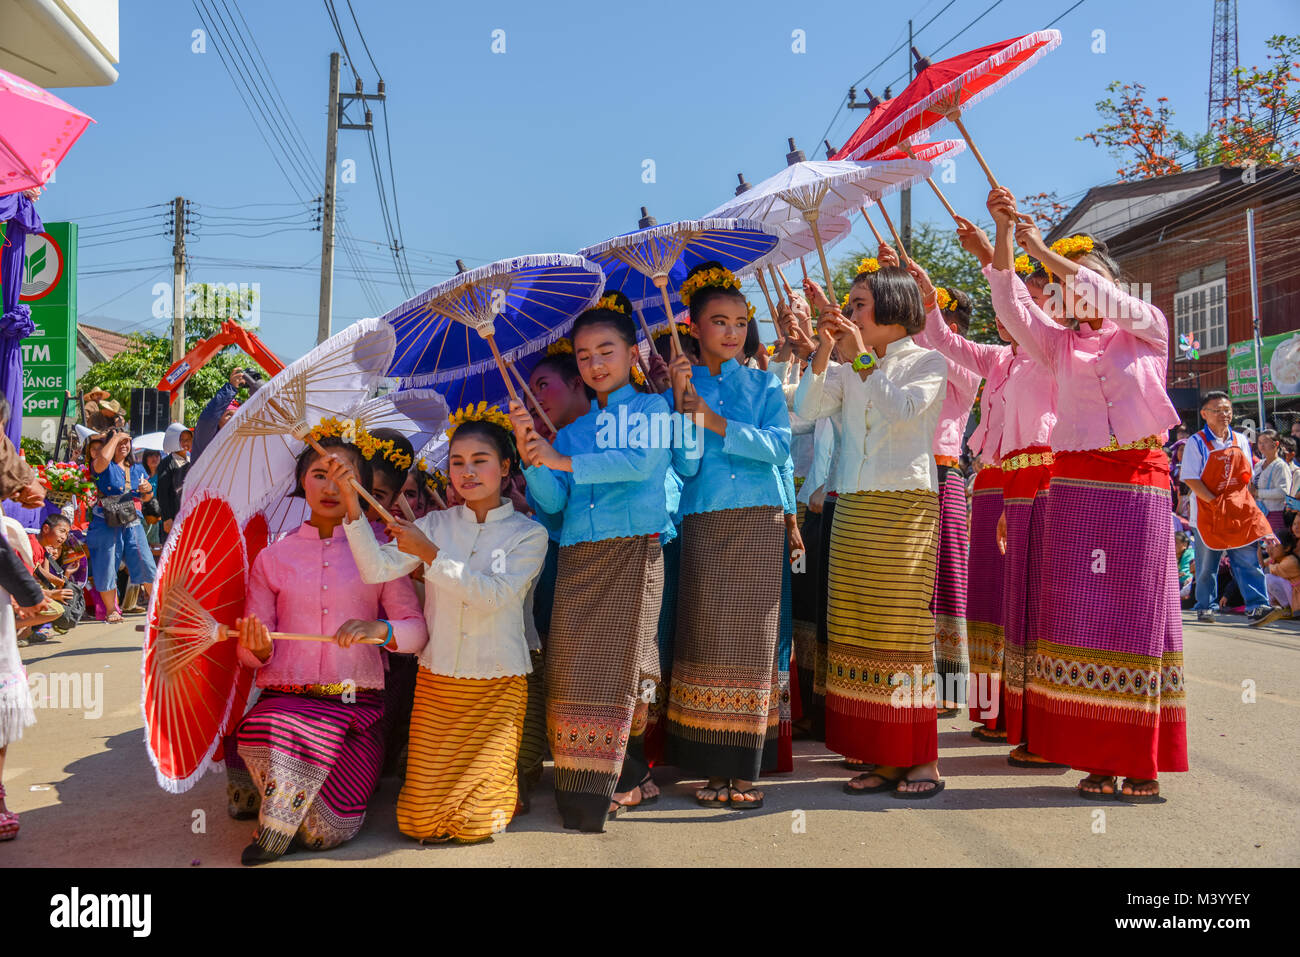 Licciana Nardi, Italia - 25 gennaio 2015 indigeni bambine con costume tradizionale ombrelli azienda e balli in stile tradizionale sfilata Foto Stock